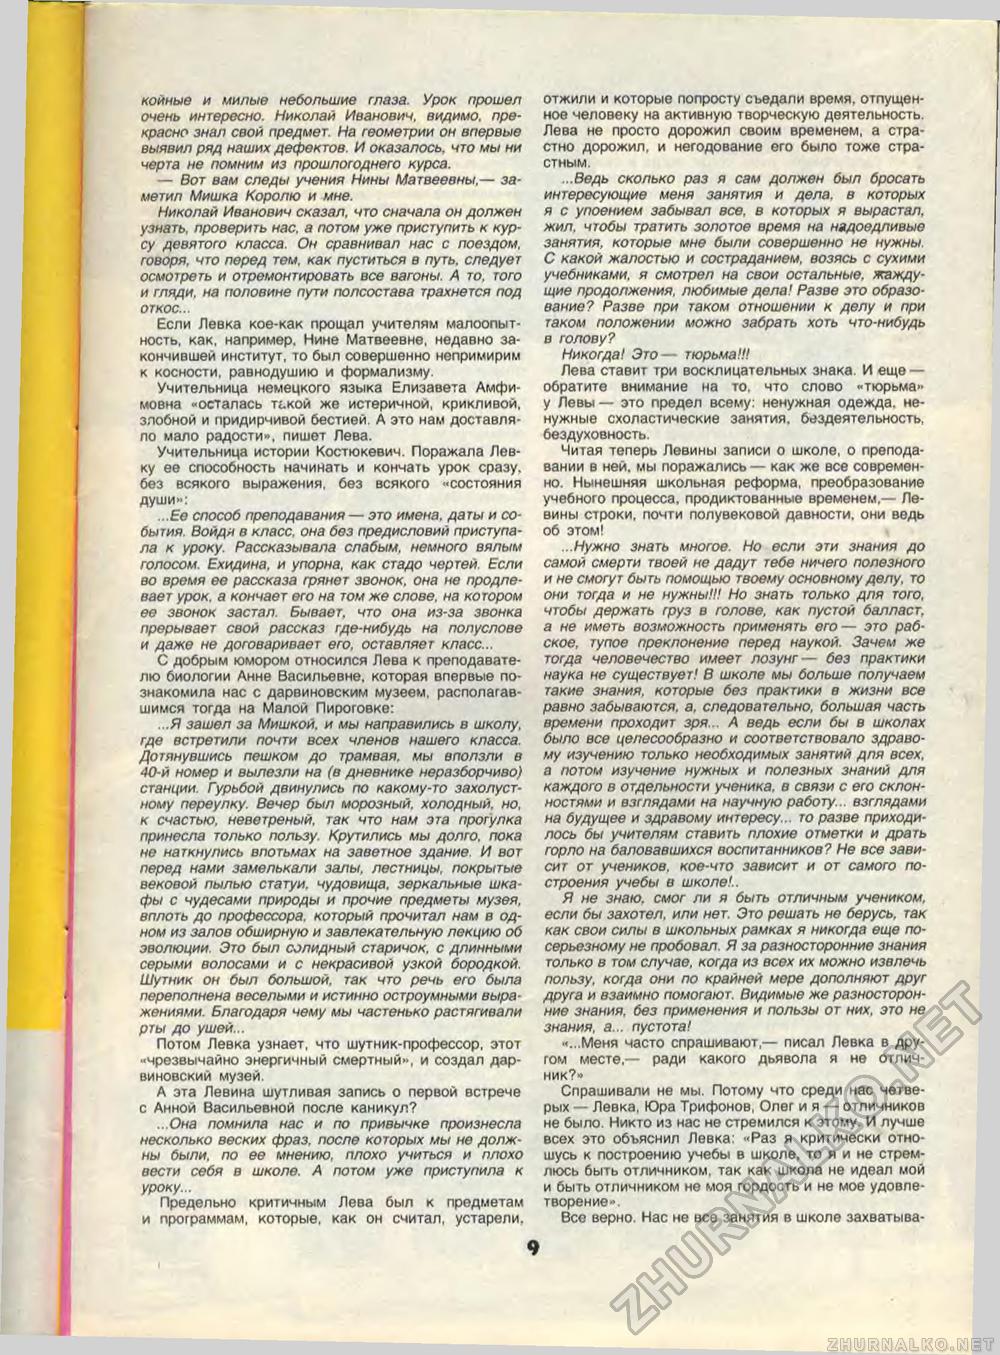  1989-05,  11